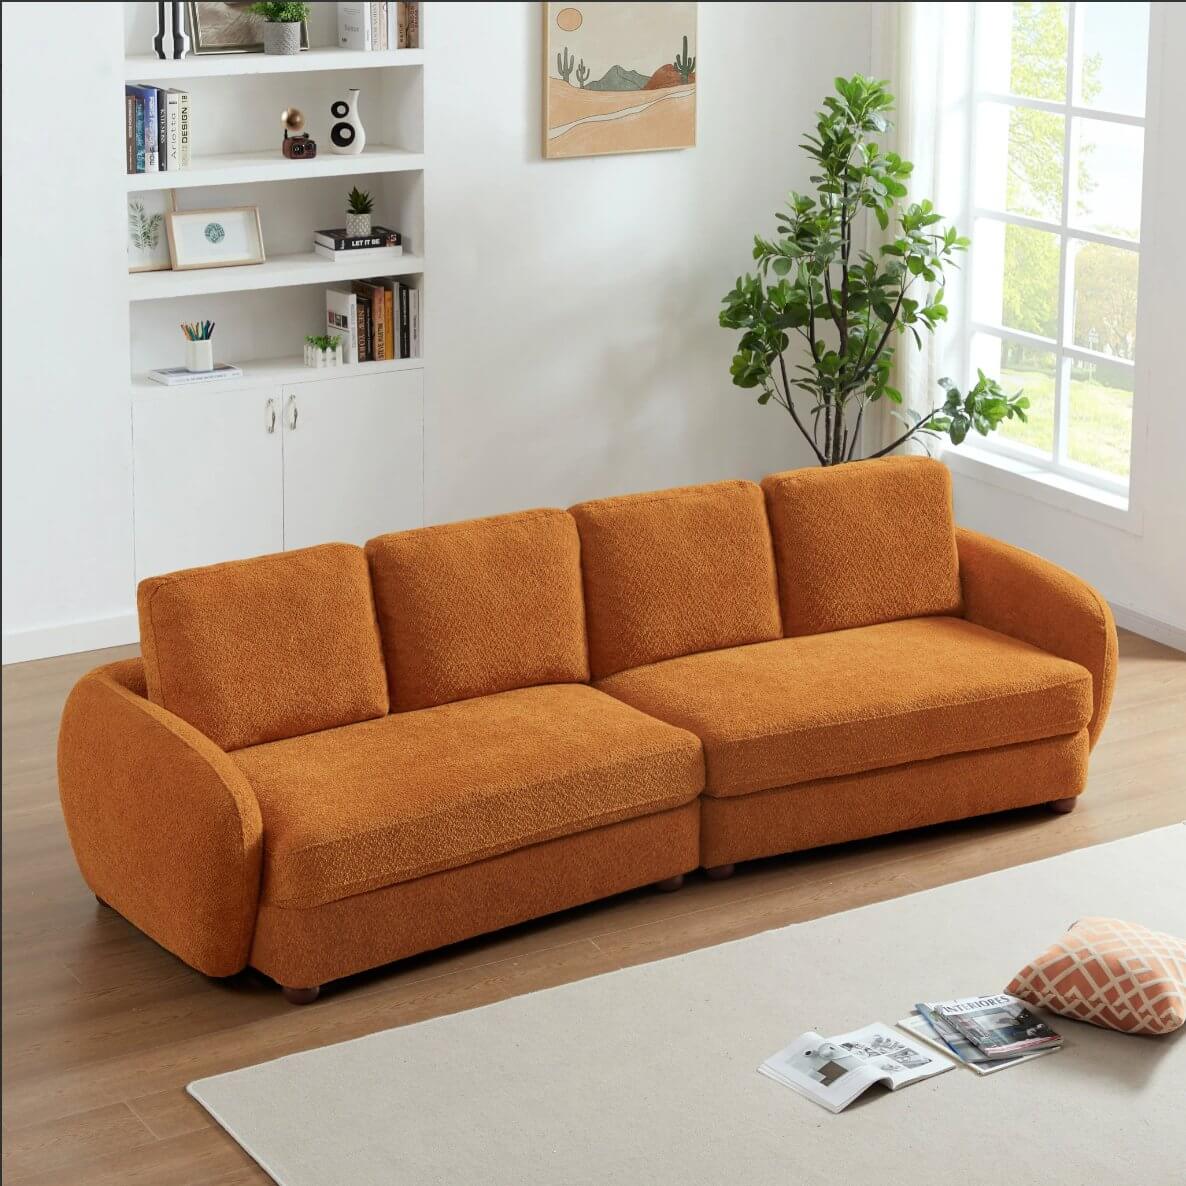 Paton MCM Style Boucle Fabric 4 Seater Sofa 114” - Revel Sofa 